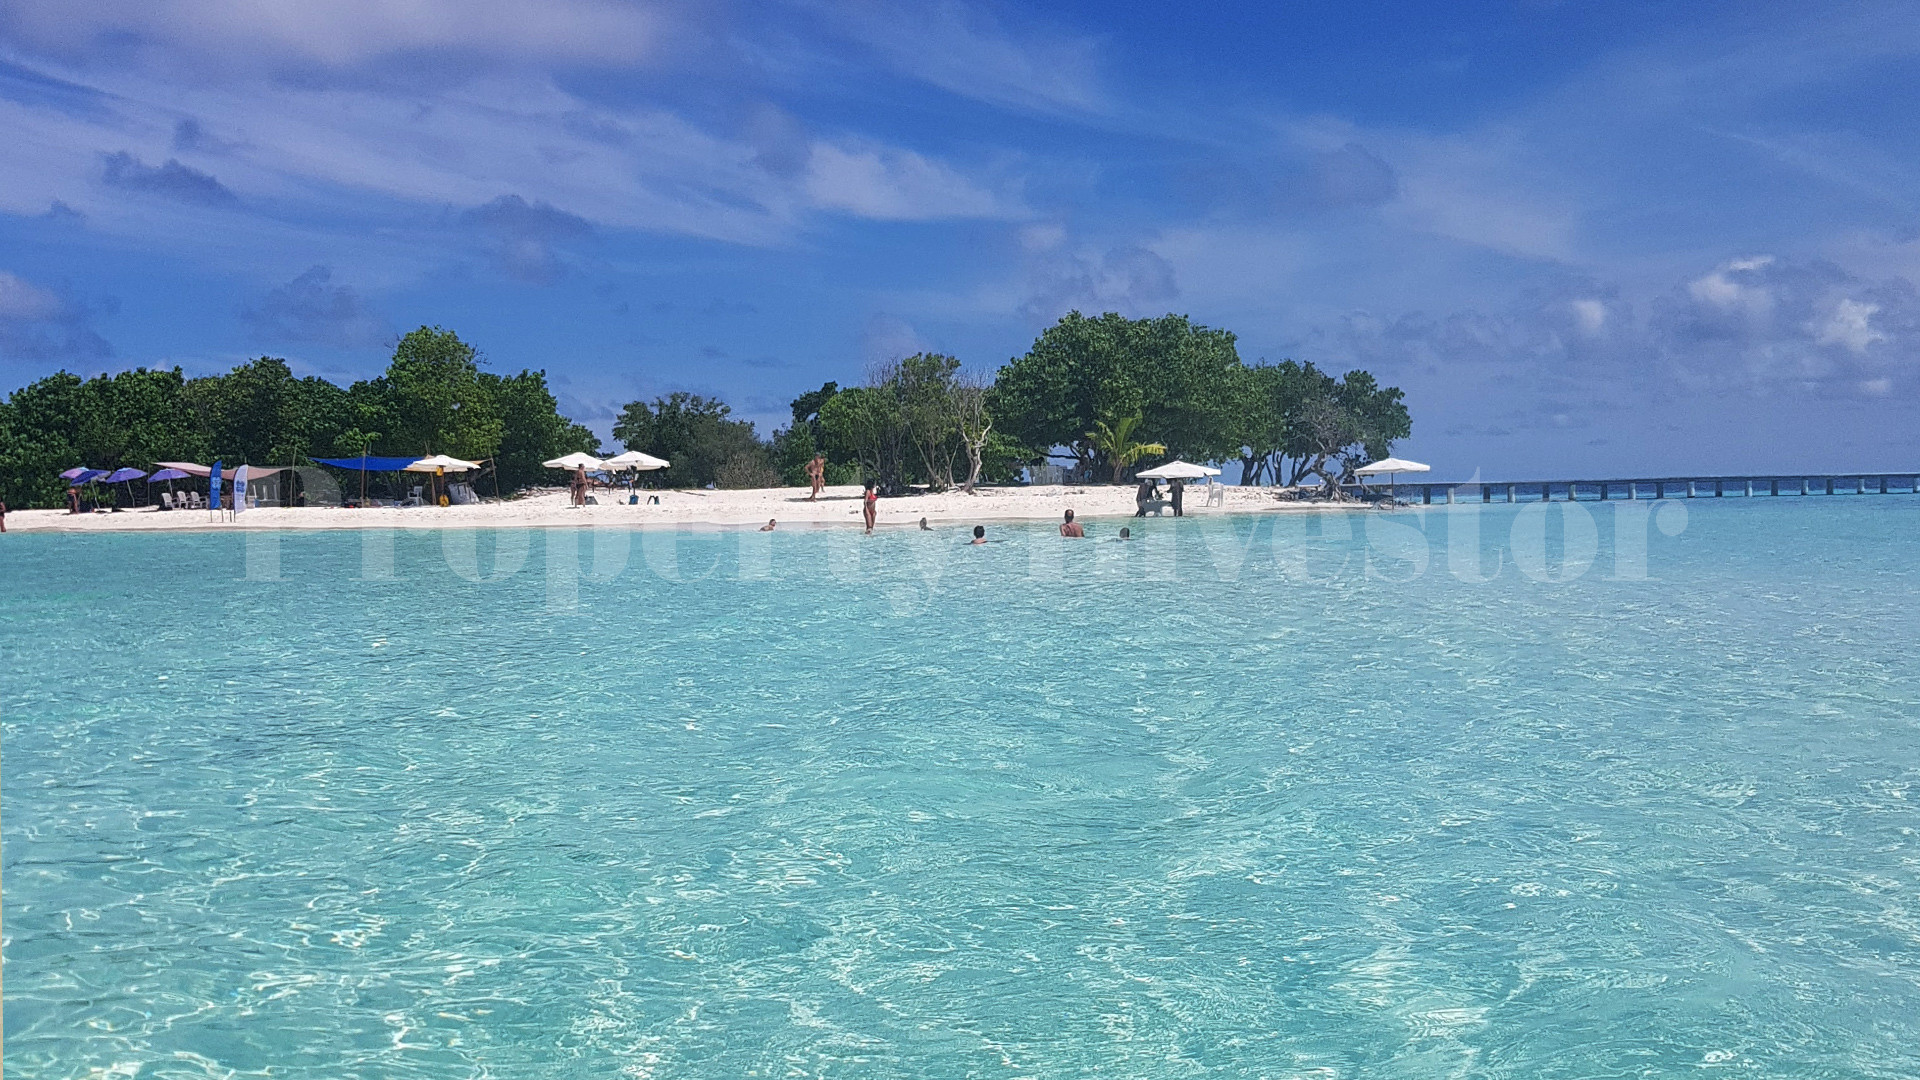 Потрясающий нетронутый остров 4 гектара с утвержденным назначением под коммерческое развитие на Мальдивах